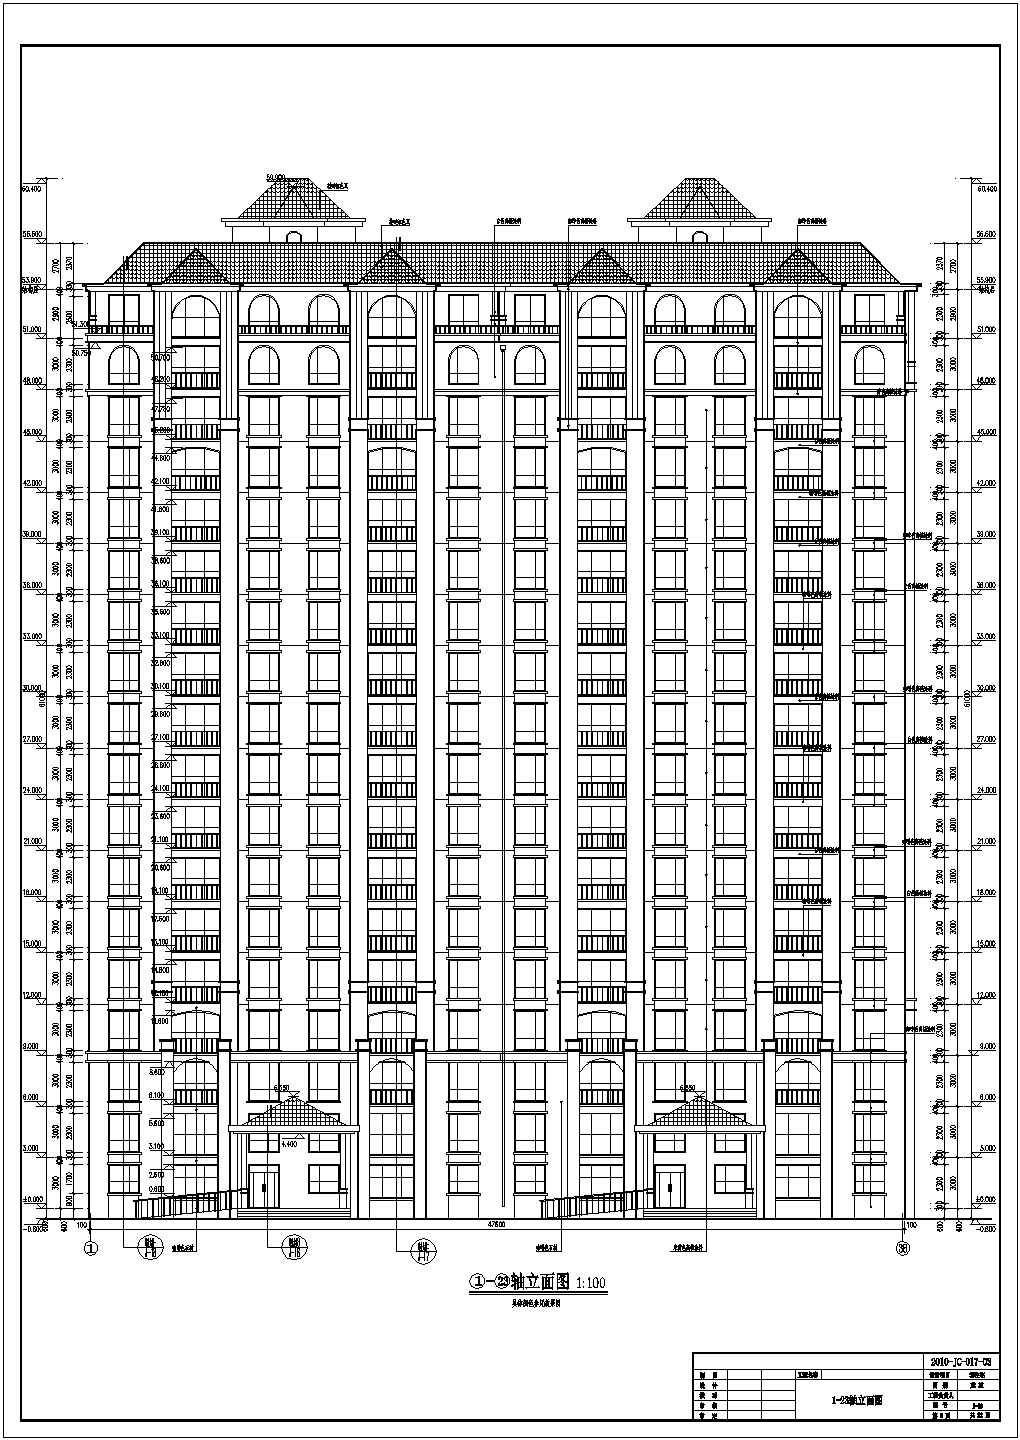 鄂尔多斯市某地18层住宅楼建筑设计施工图